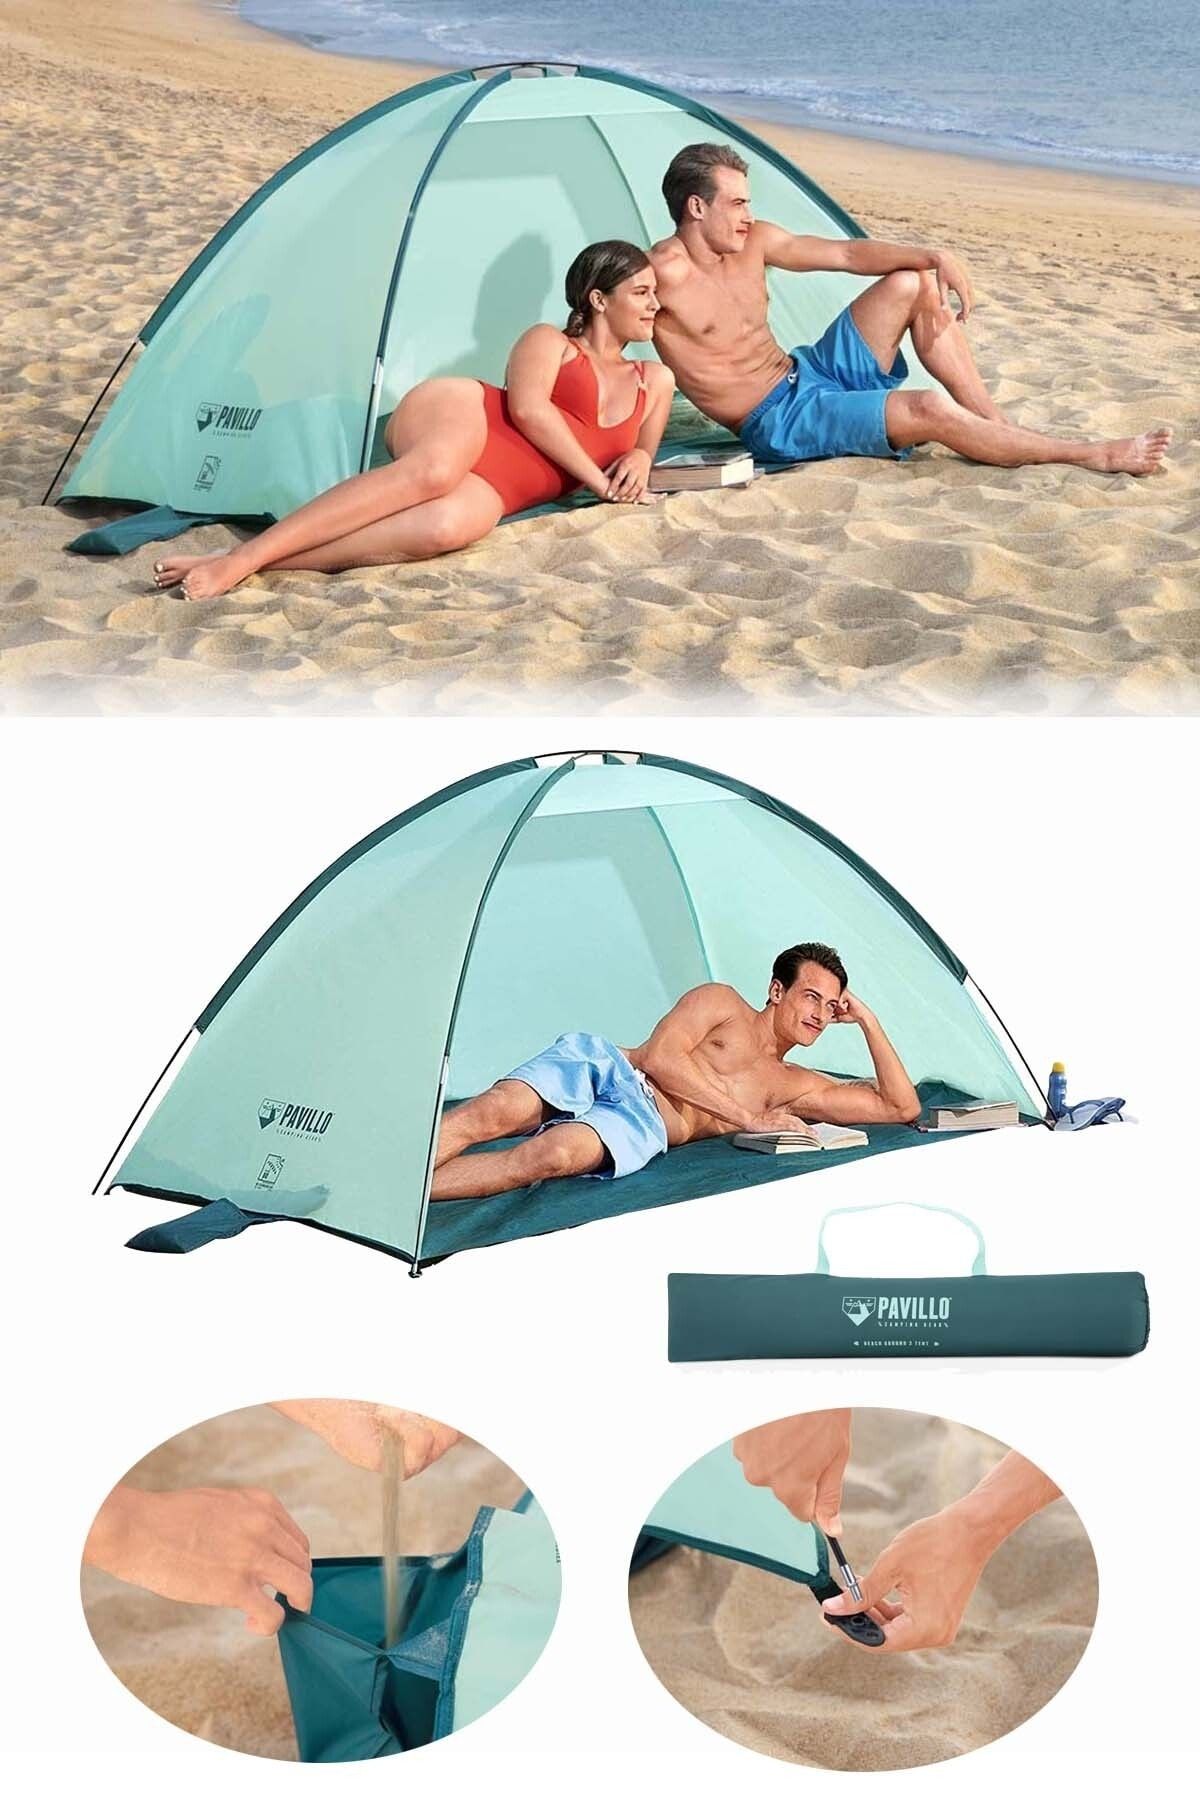 Binbirreyon Plaj Güneşliği Plaj Çadırı Tente Gölgelik Çantalı 120x200cm Hb021-1